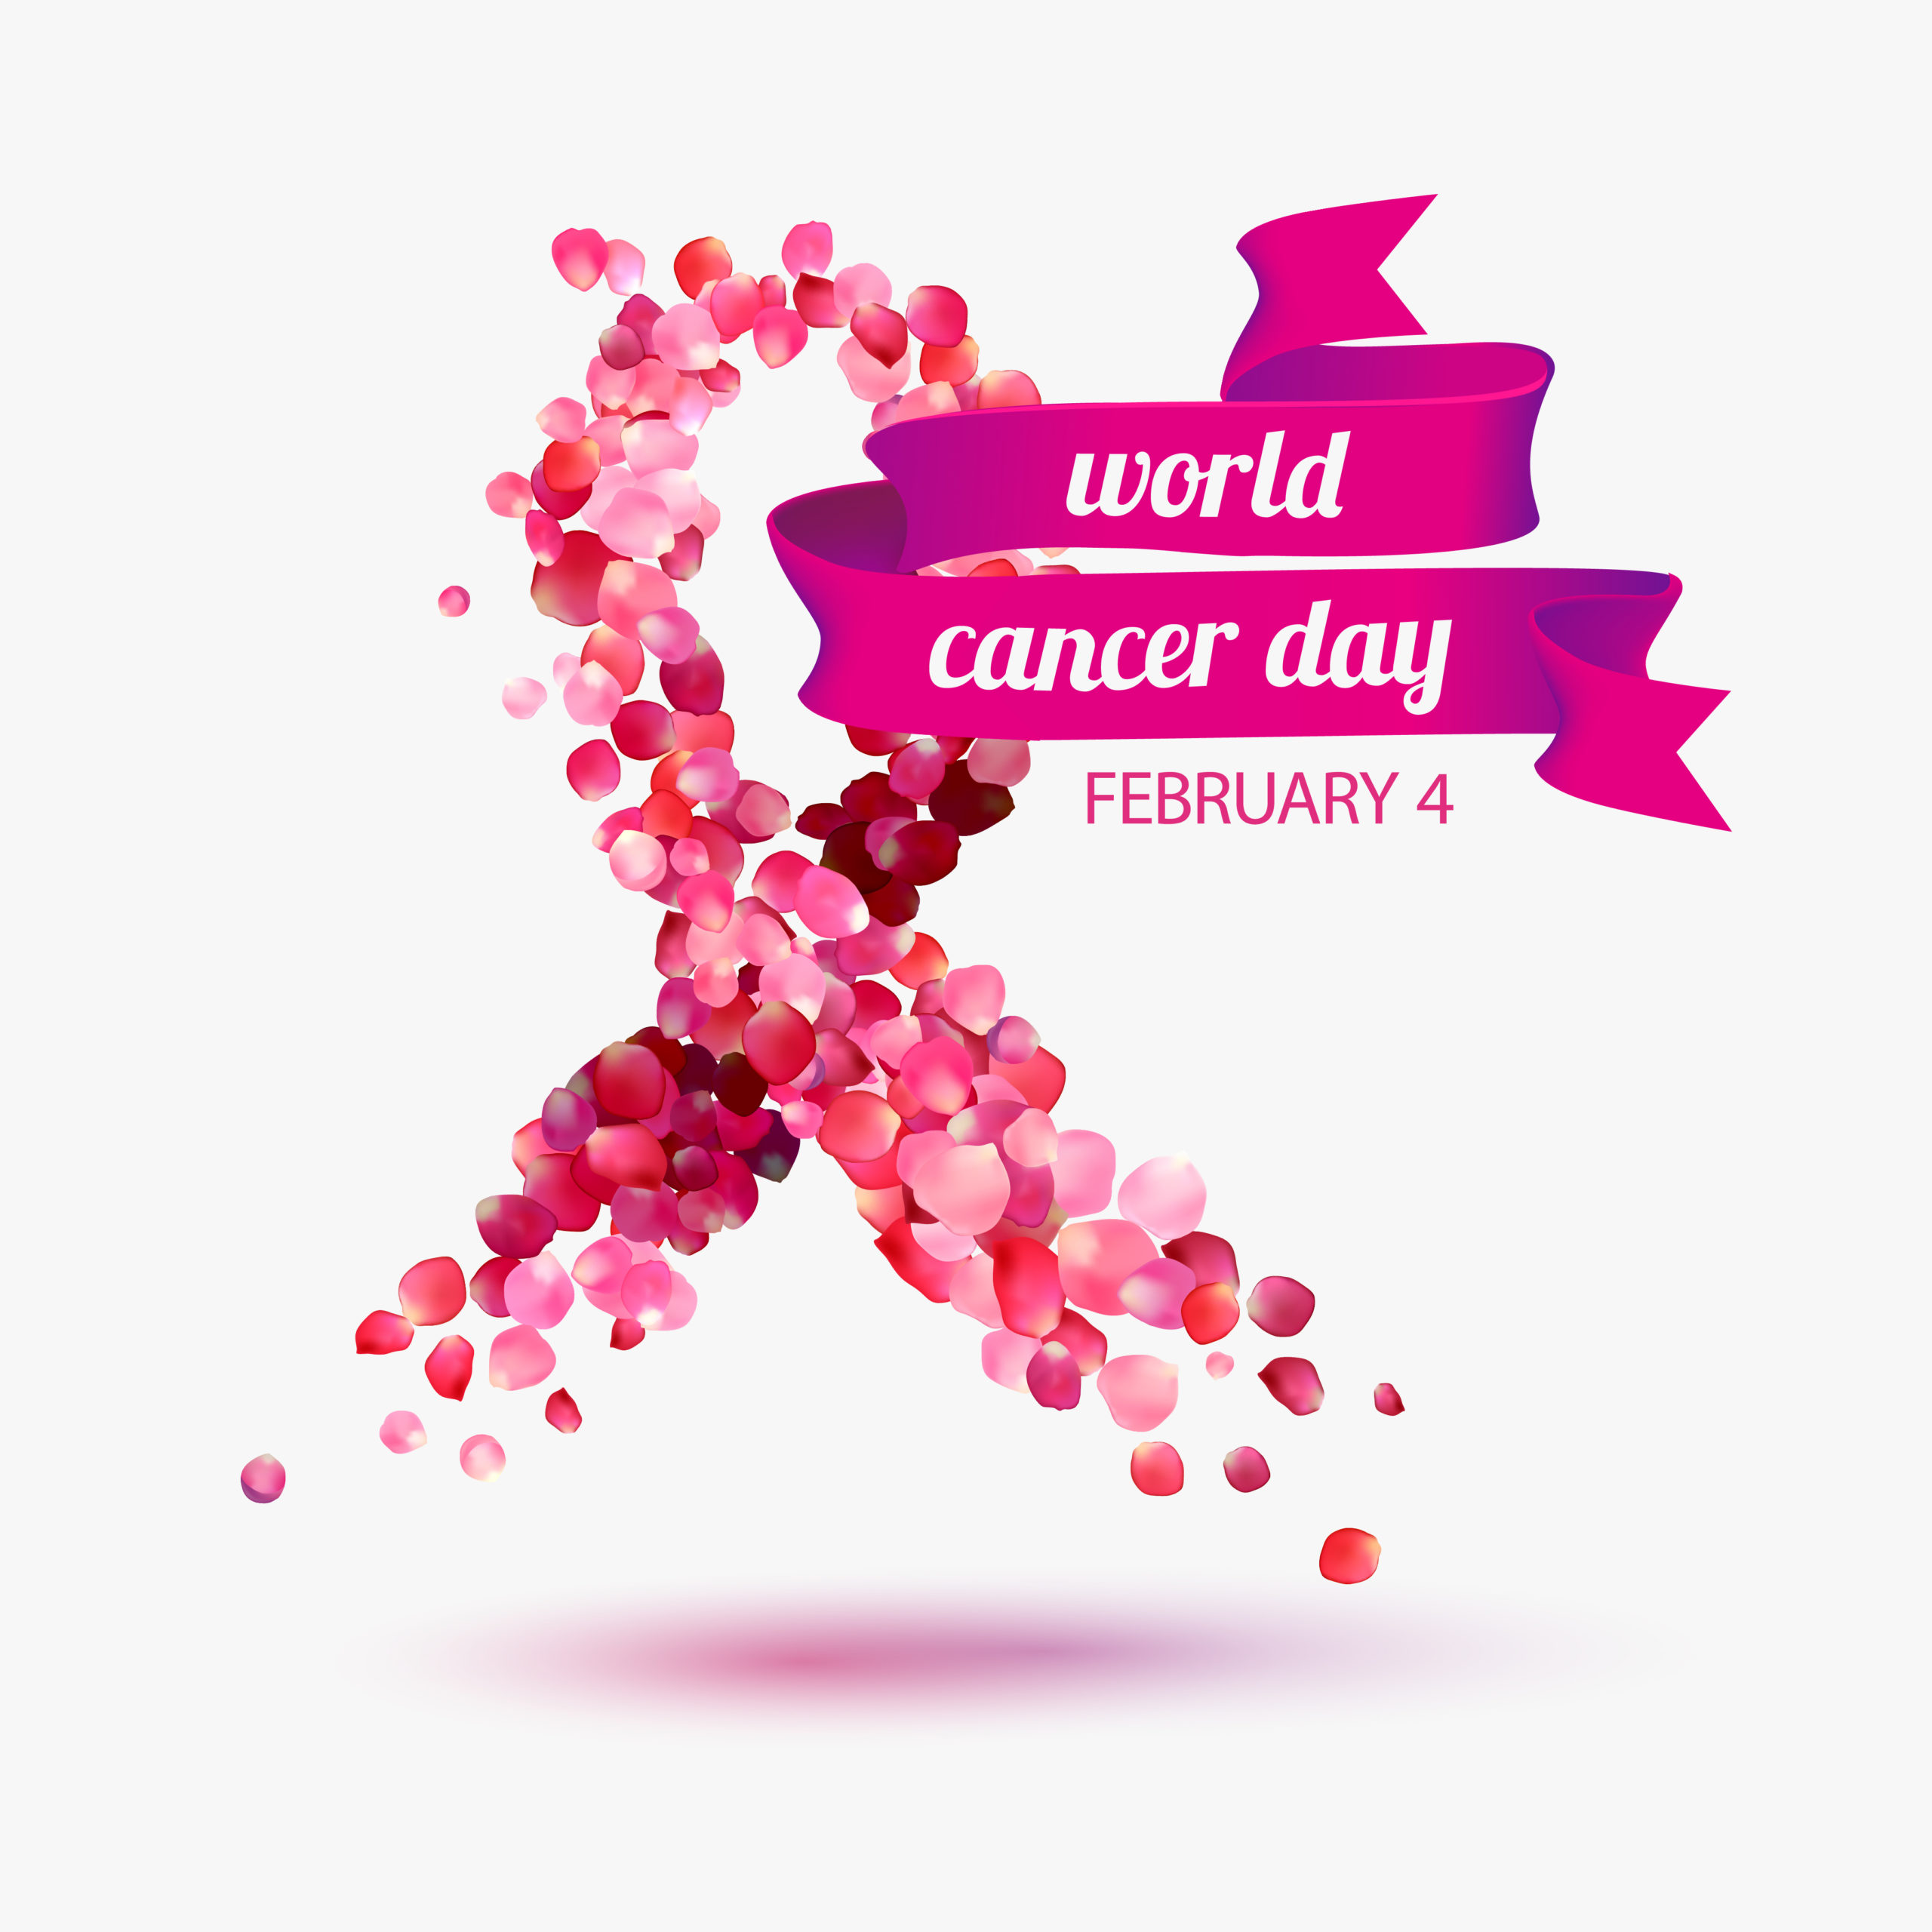 World cancer day: visita ginecologica e test hpv gratuiti al cdi